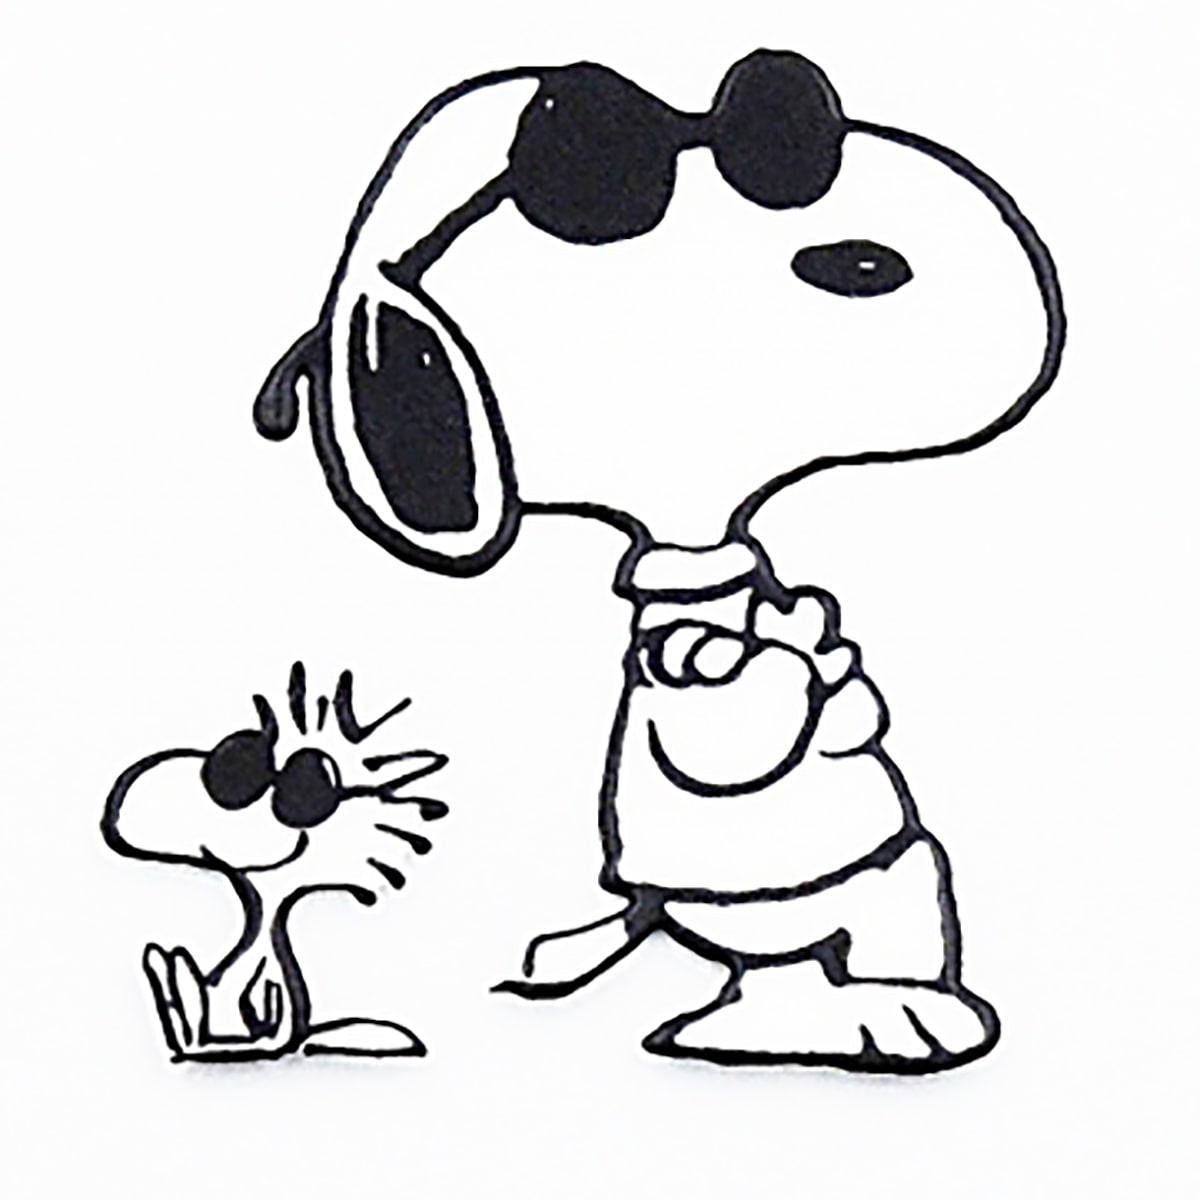 楽天市場 ステッカー シール Peanuts Snoopy スヌーピー 耐熱 耐水ステッカーjoecool ジョークール カスタマイズ オリジナル Pks148 ワッペン通販 ワッペンストア